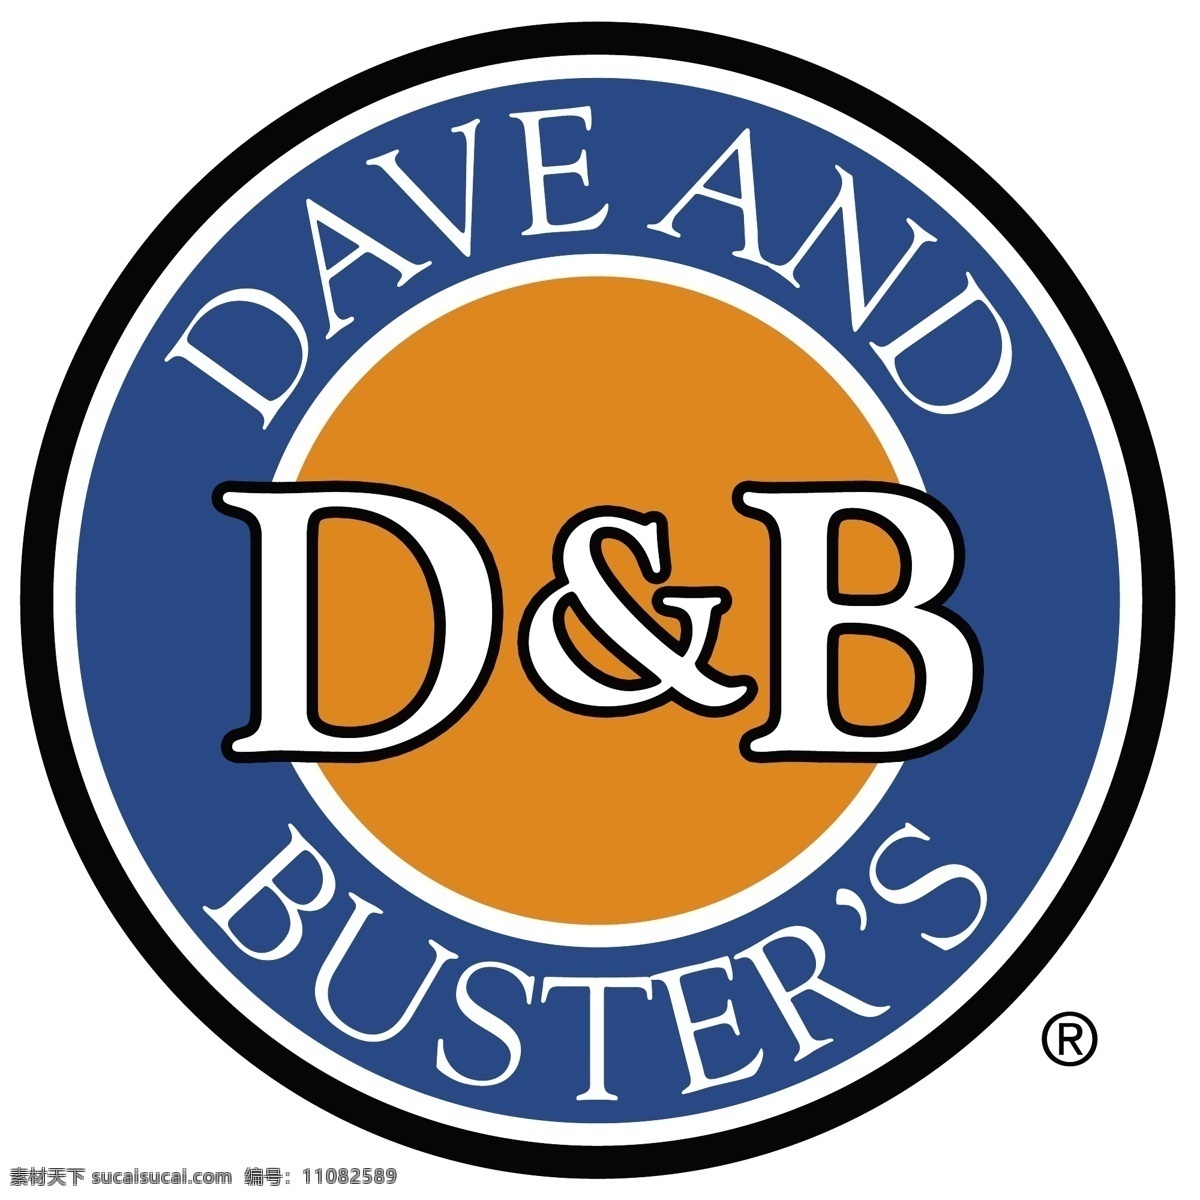 矢量 logo db 黄色 蓝色 d b dave buster 矢量图 其他矢量图